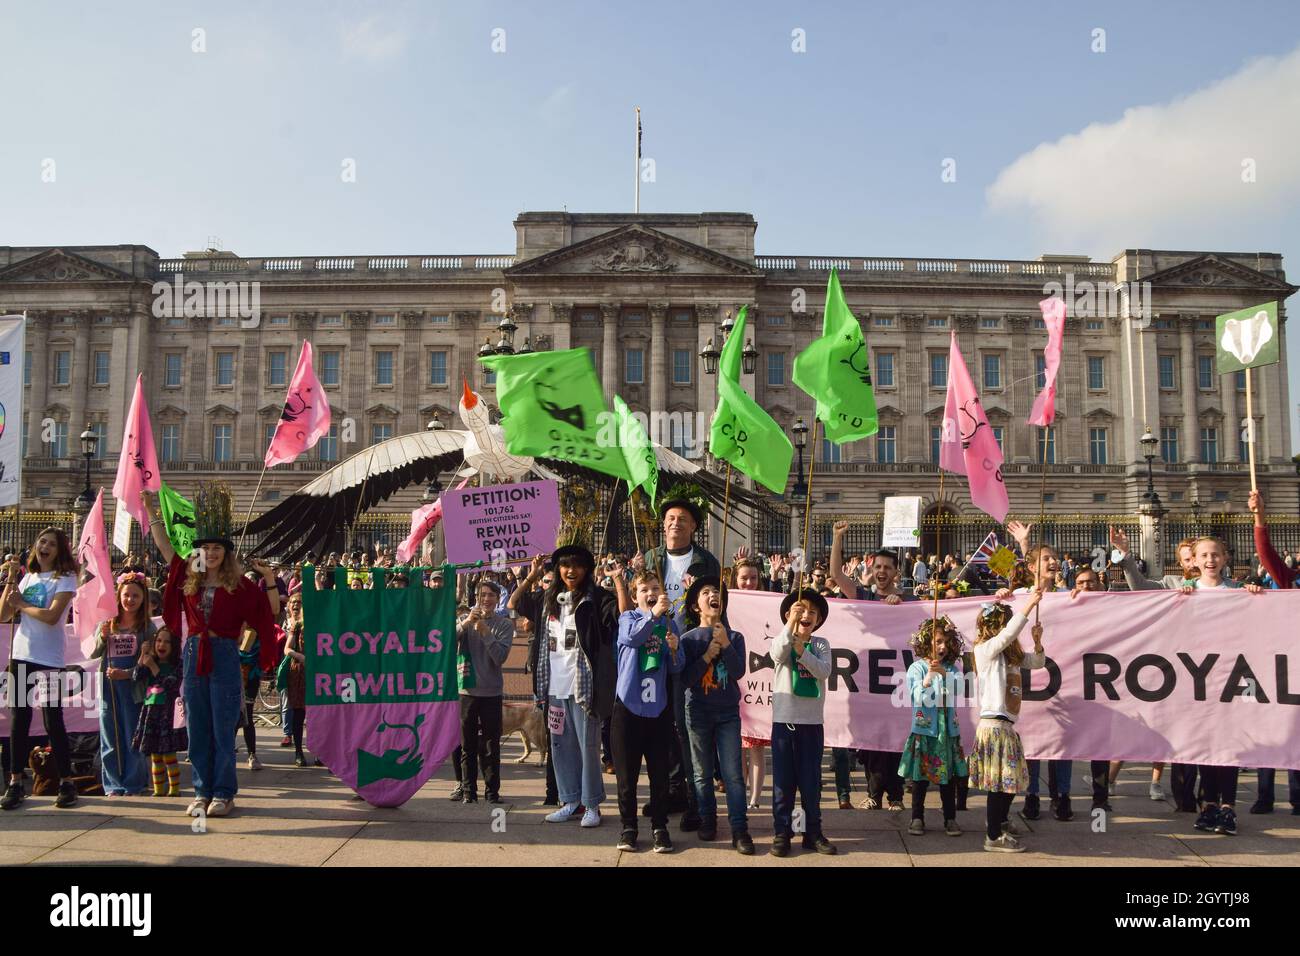 Londres, Royaume-Uni.9 octobre 2021.Des manifestants, des enfants et des familles se sont rassemblés devant le palais de Buckingham et ont présenté une pétition demandant à la famille royale de se remasservir pour augmenter la faune et contribuer à la lutte contre la crise climatique. Banque D'Images